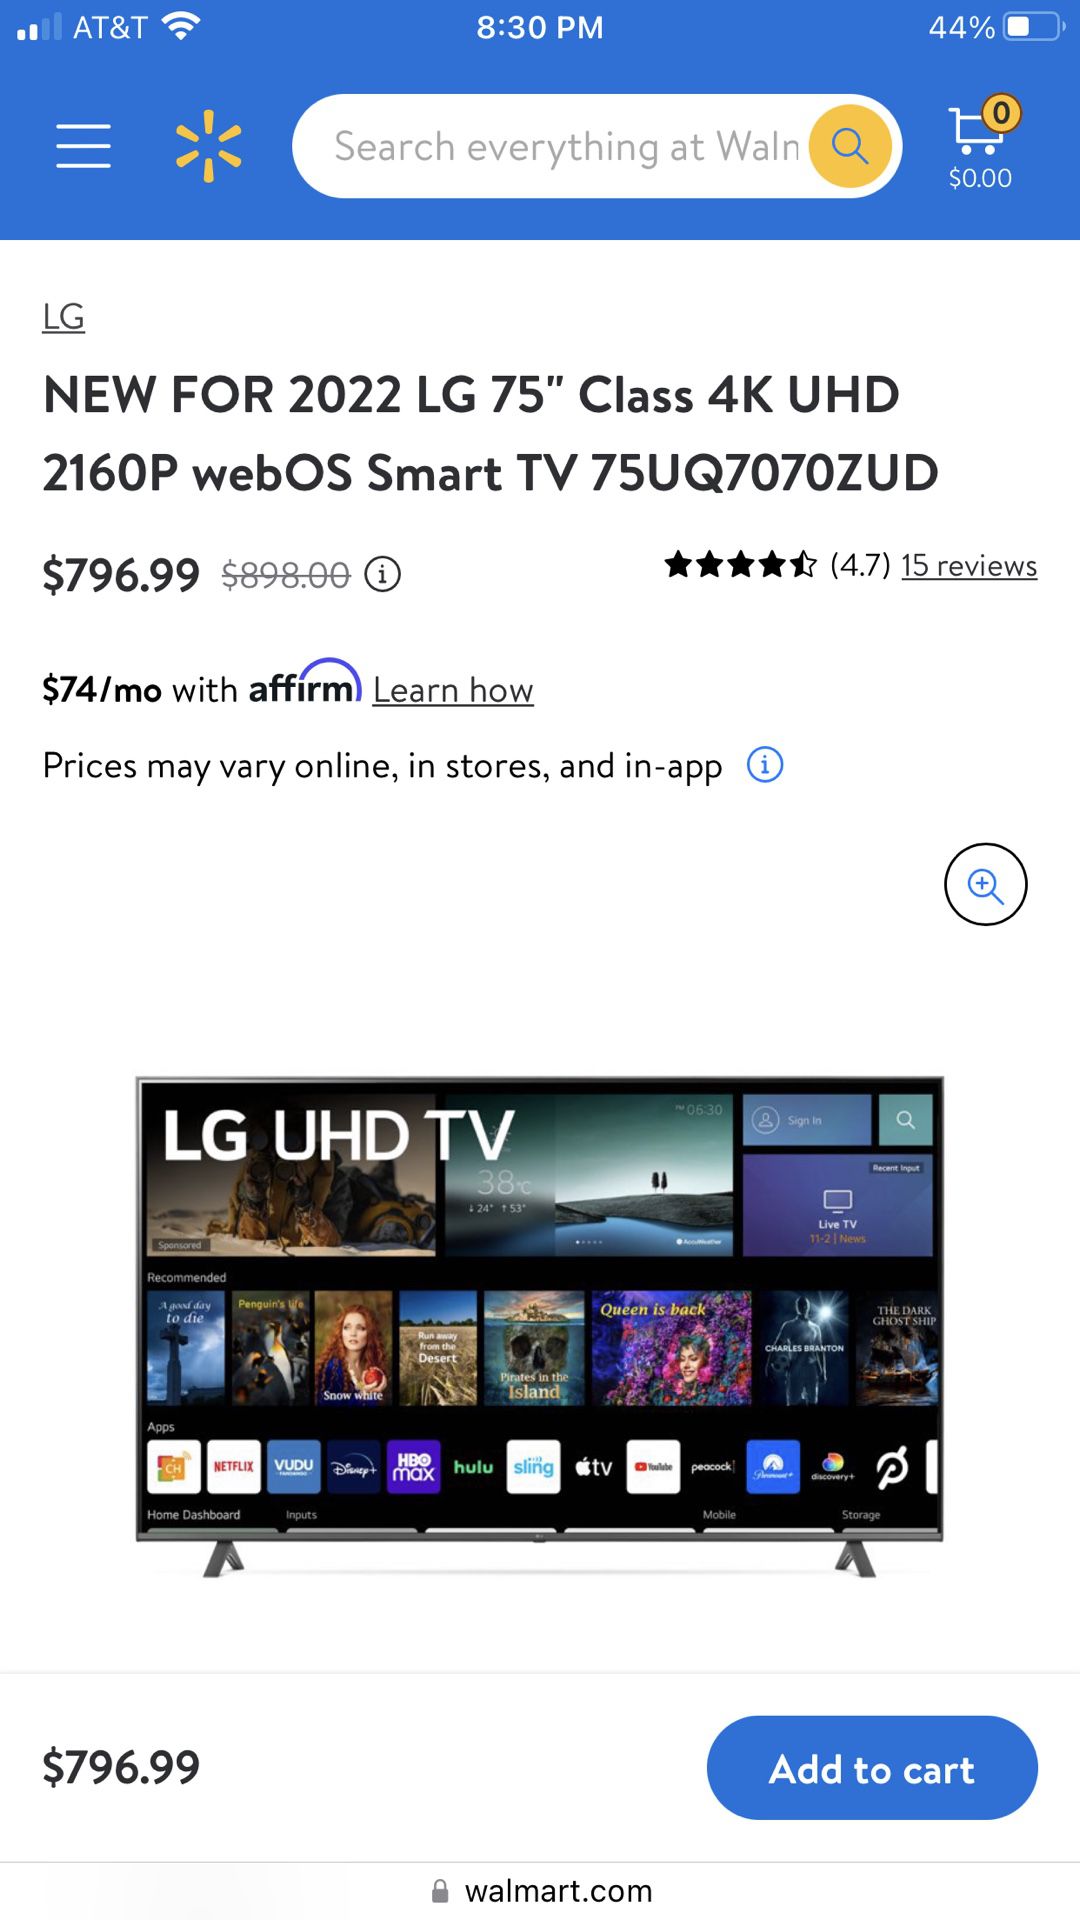 LG 75 Class 4K UHD 2160P Smart TV 75UN6955ZUD 